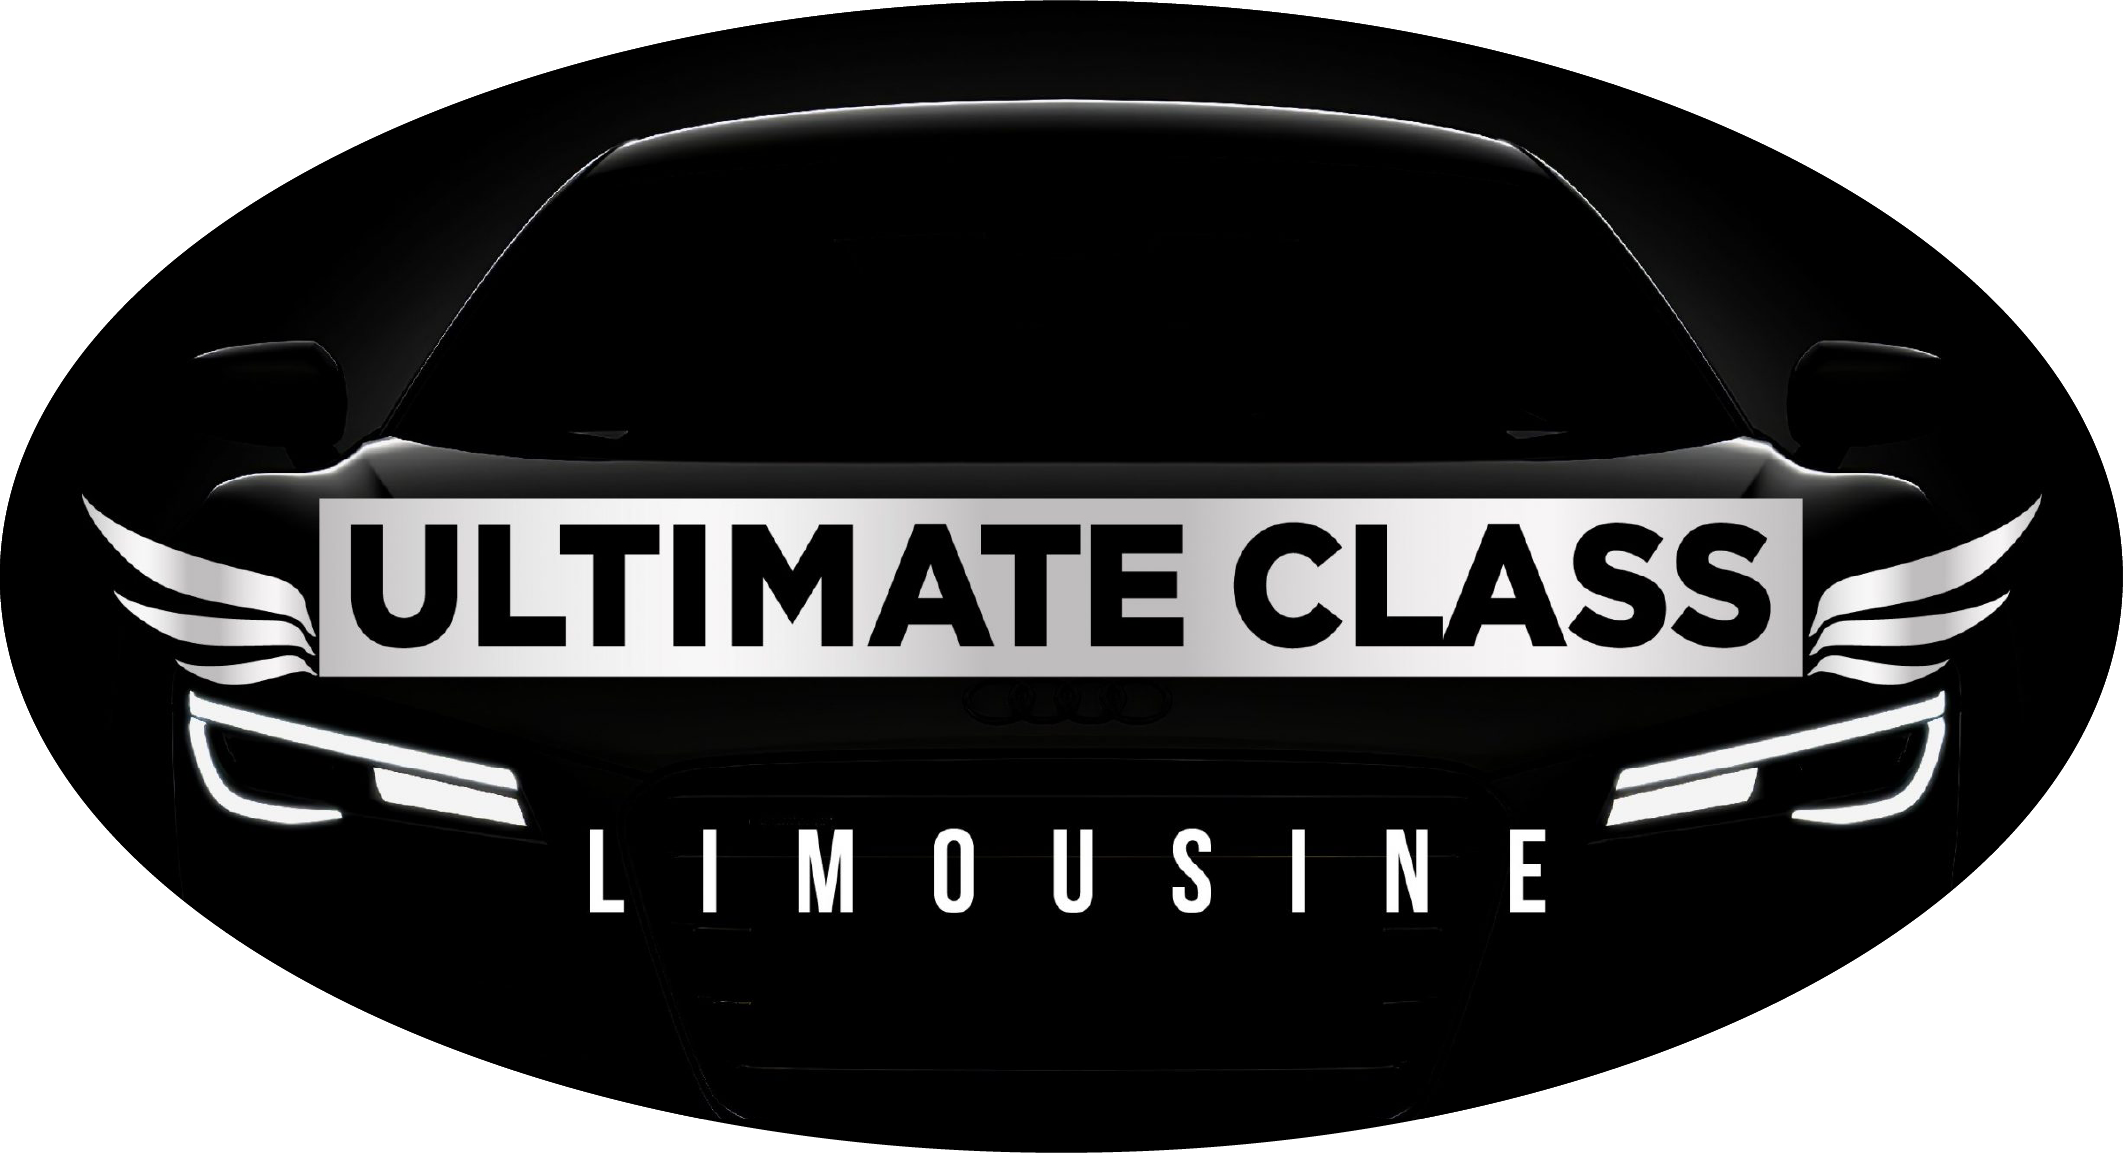 Ultimate Class Limousine